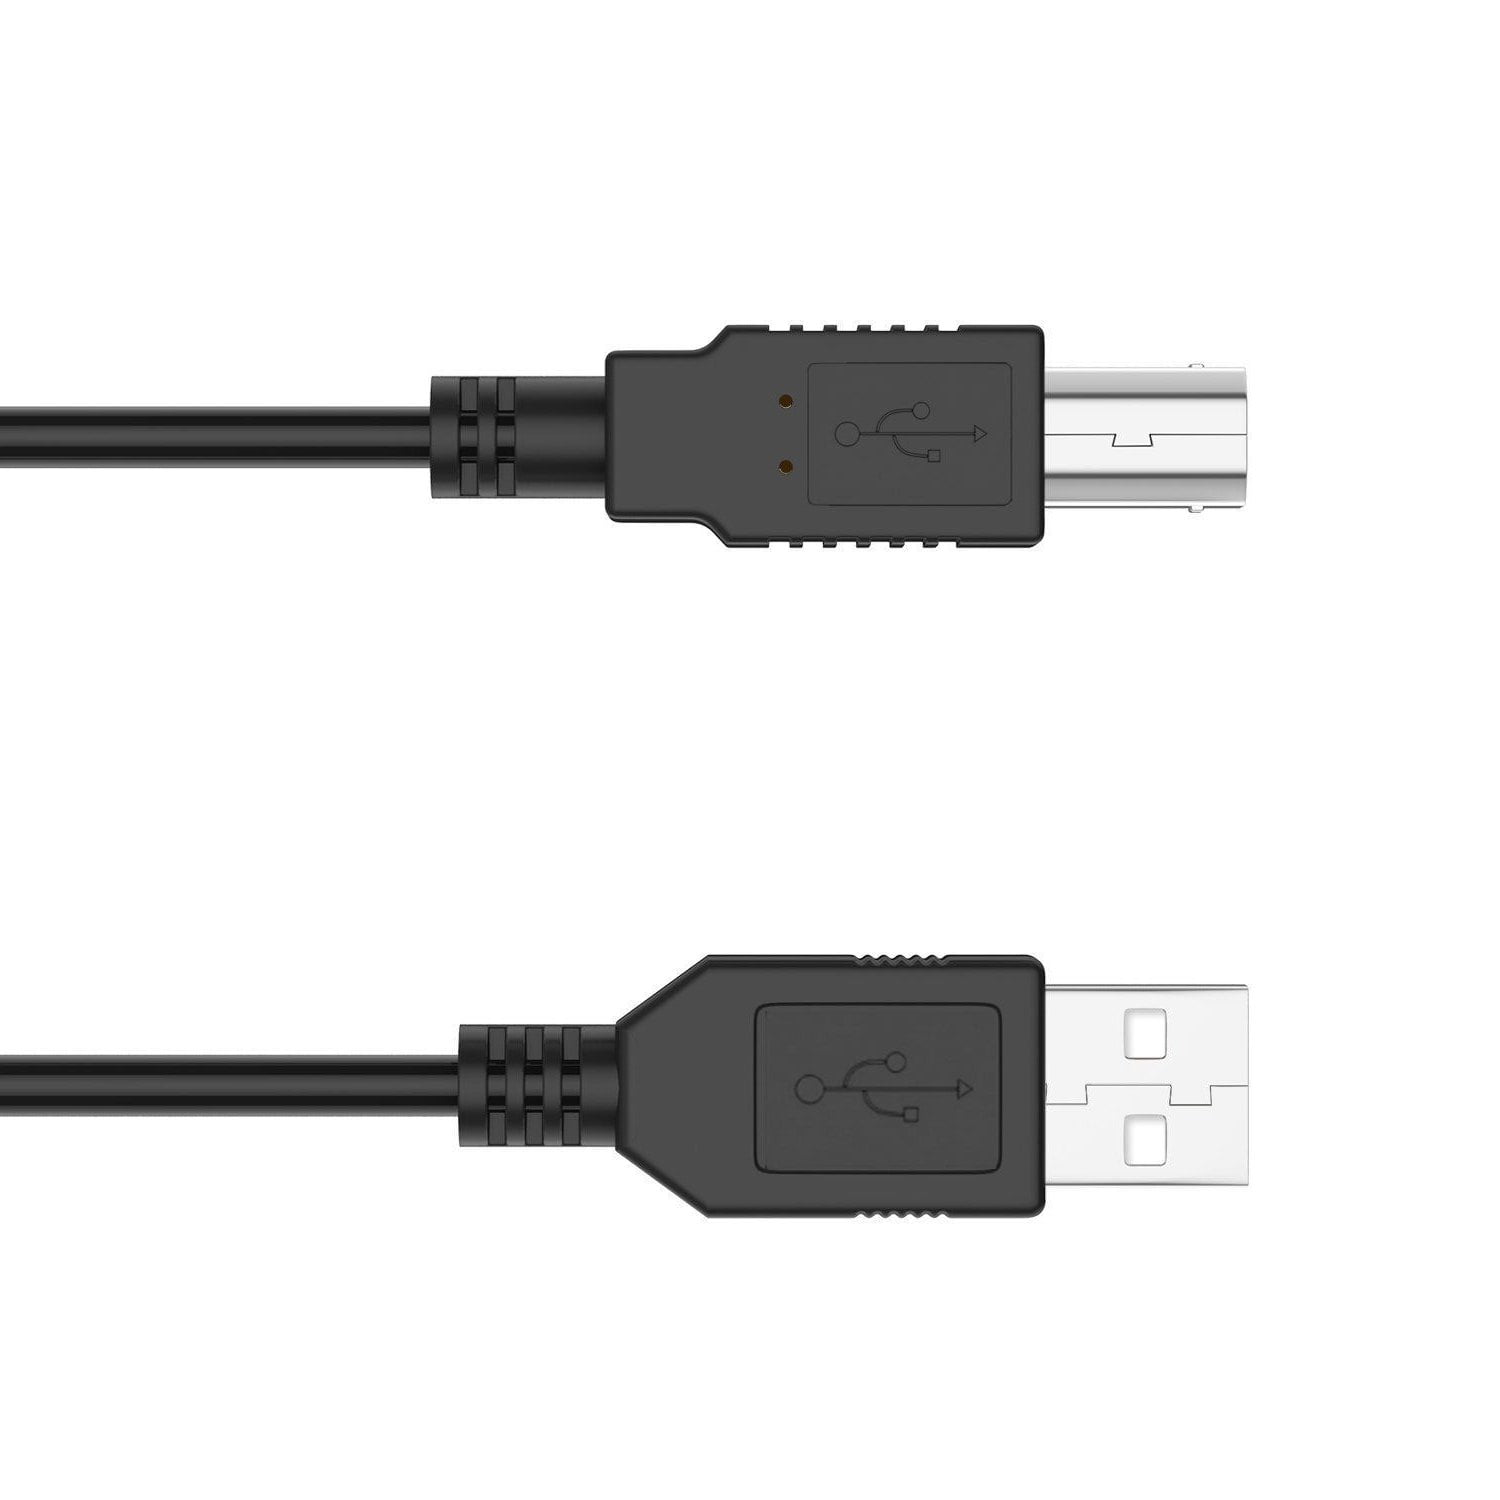 USB CABLE FOR HP PHOTOSMART C4599 C4524 C4635 C4640 C4650 C4680 C4683 PRINTER 